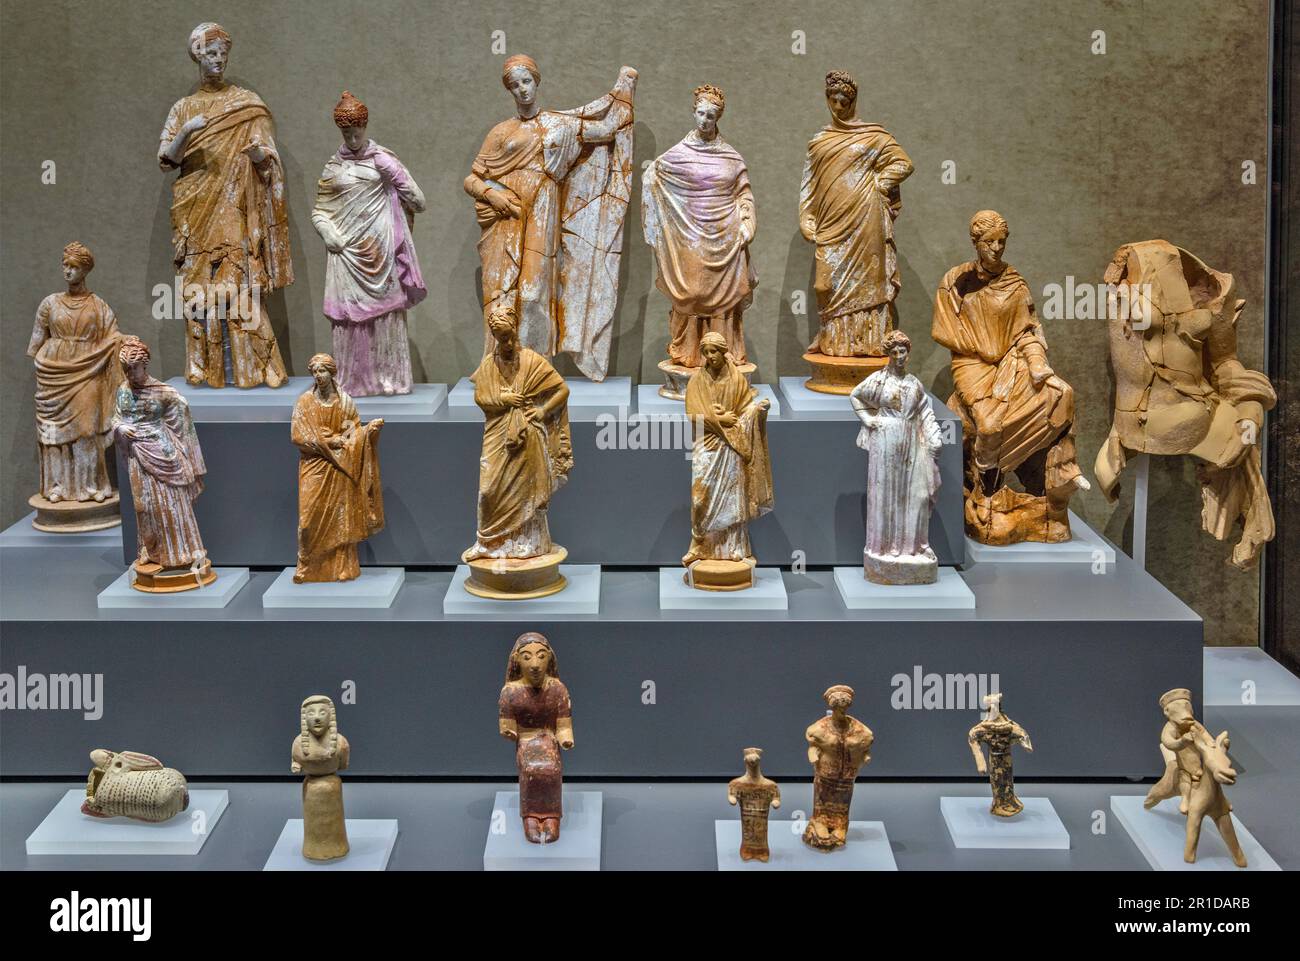 Figurines en terre cuite créées par des artisans corinthiens, Musée archéologique de la Corinthe antique, municipalité de Corinthe, région du Péloponnèse, Grèce Banque D'Images